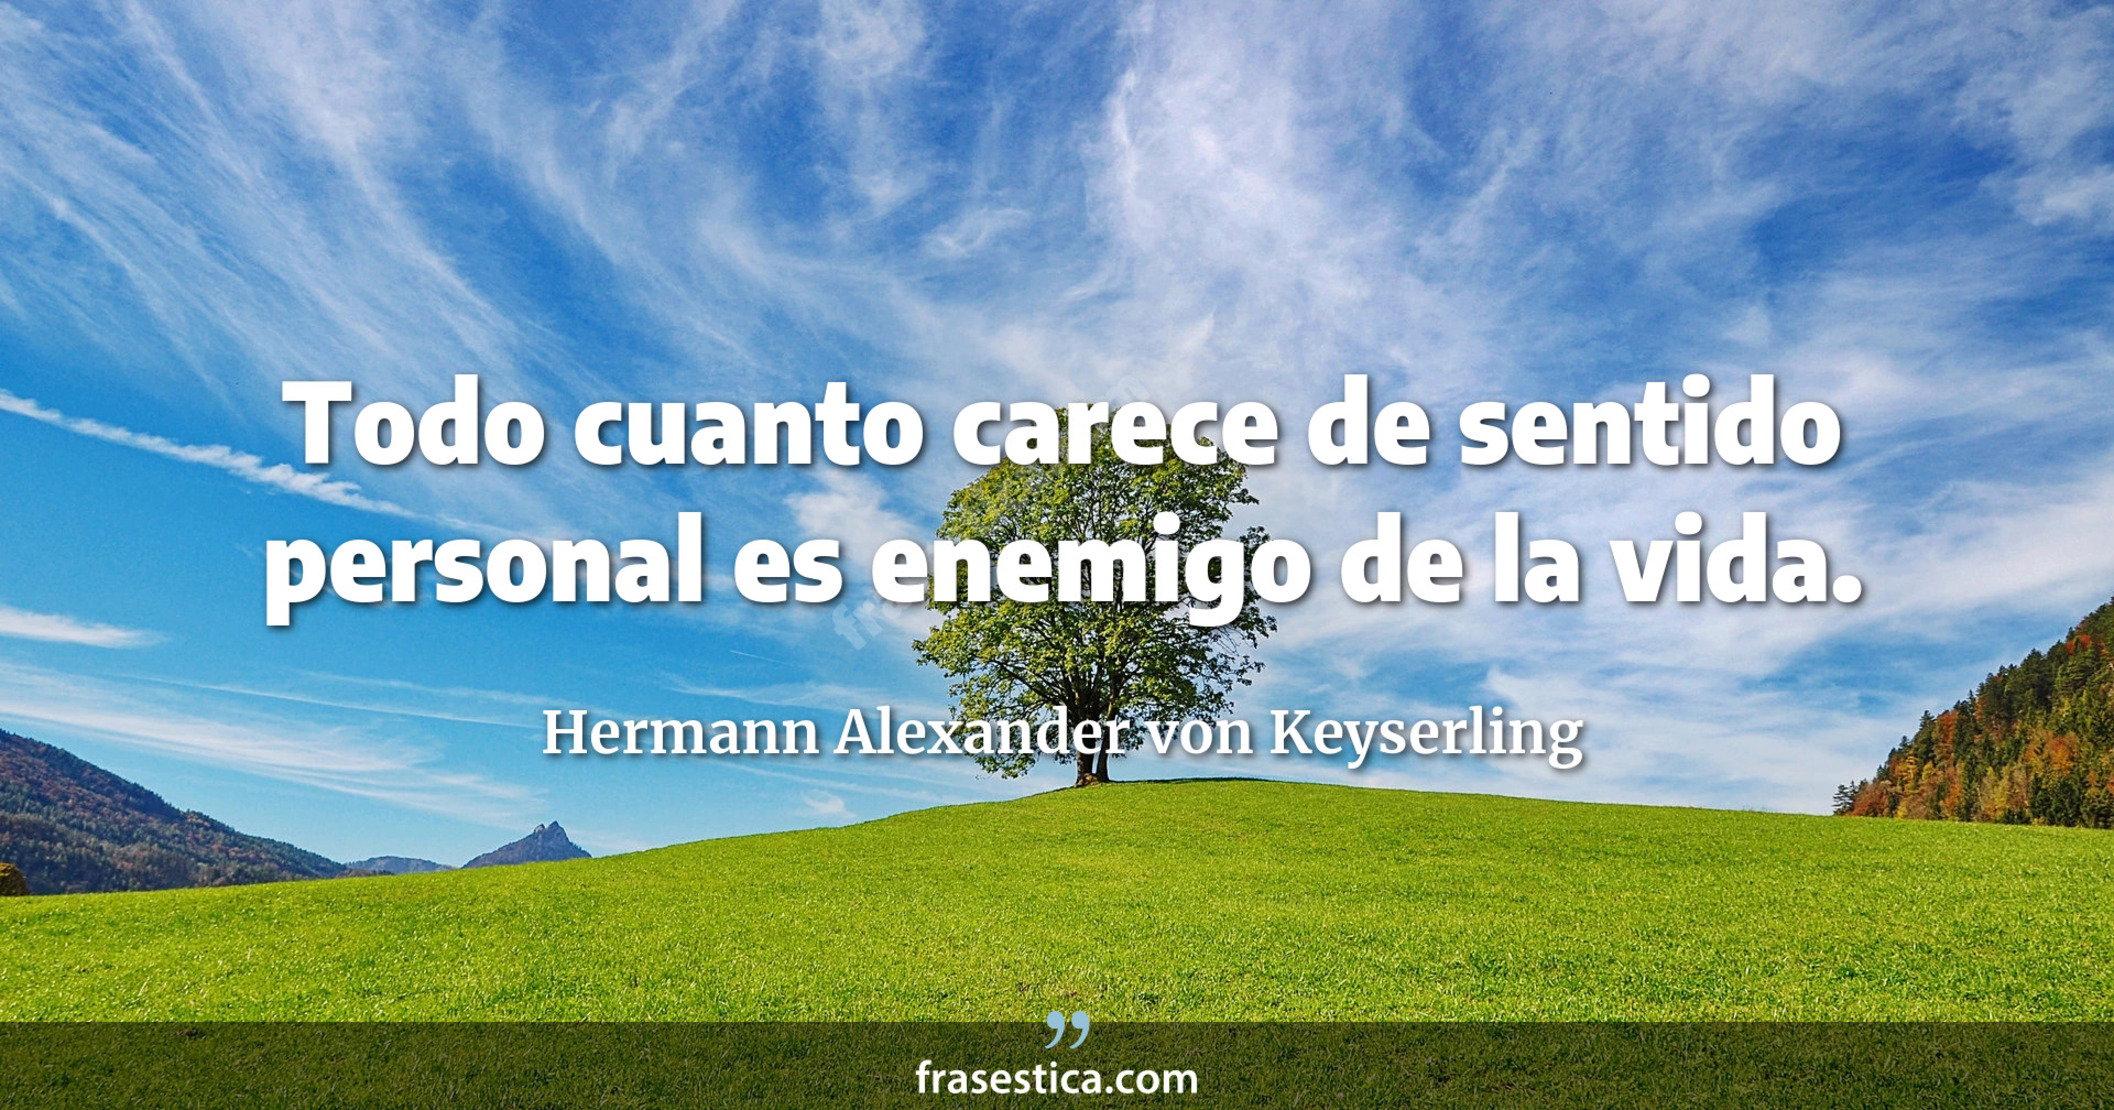 Todo cuanto carece de sentido personal es enemigo de la vida. - Hermann Alexander von Keyserling